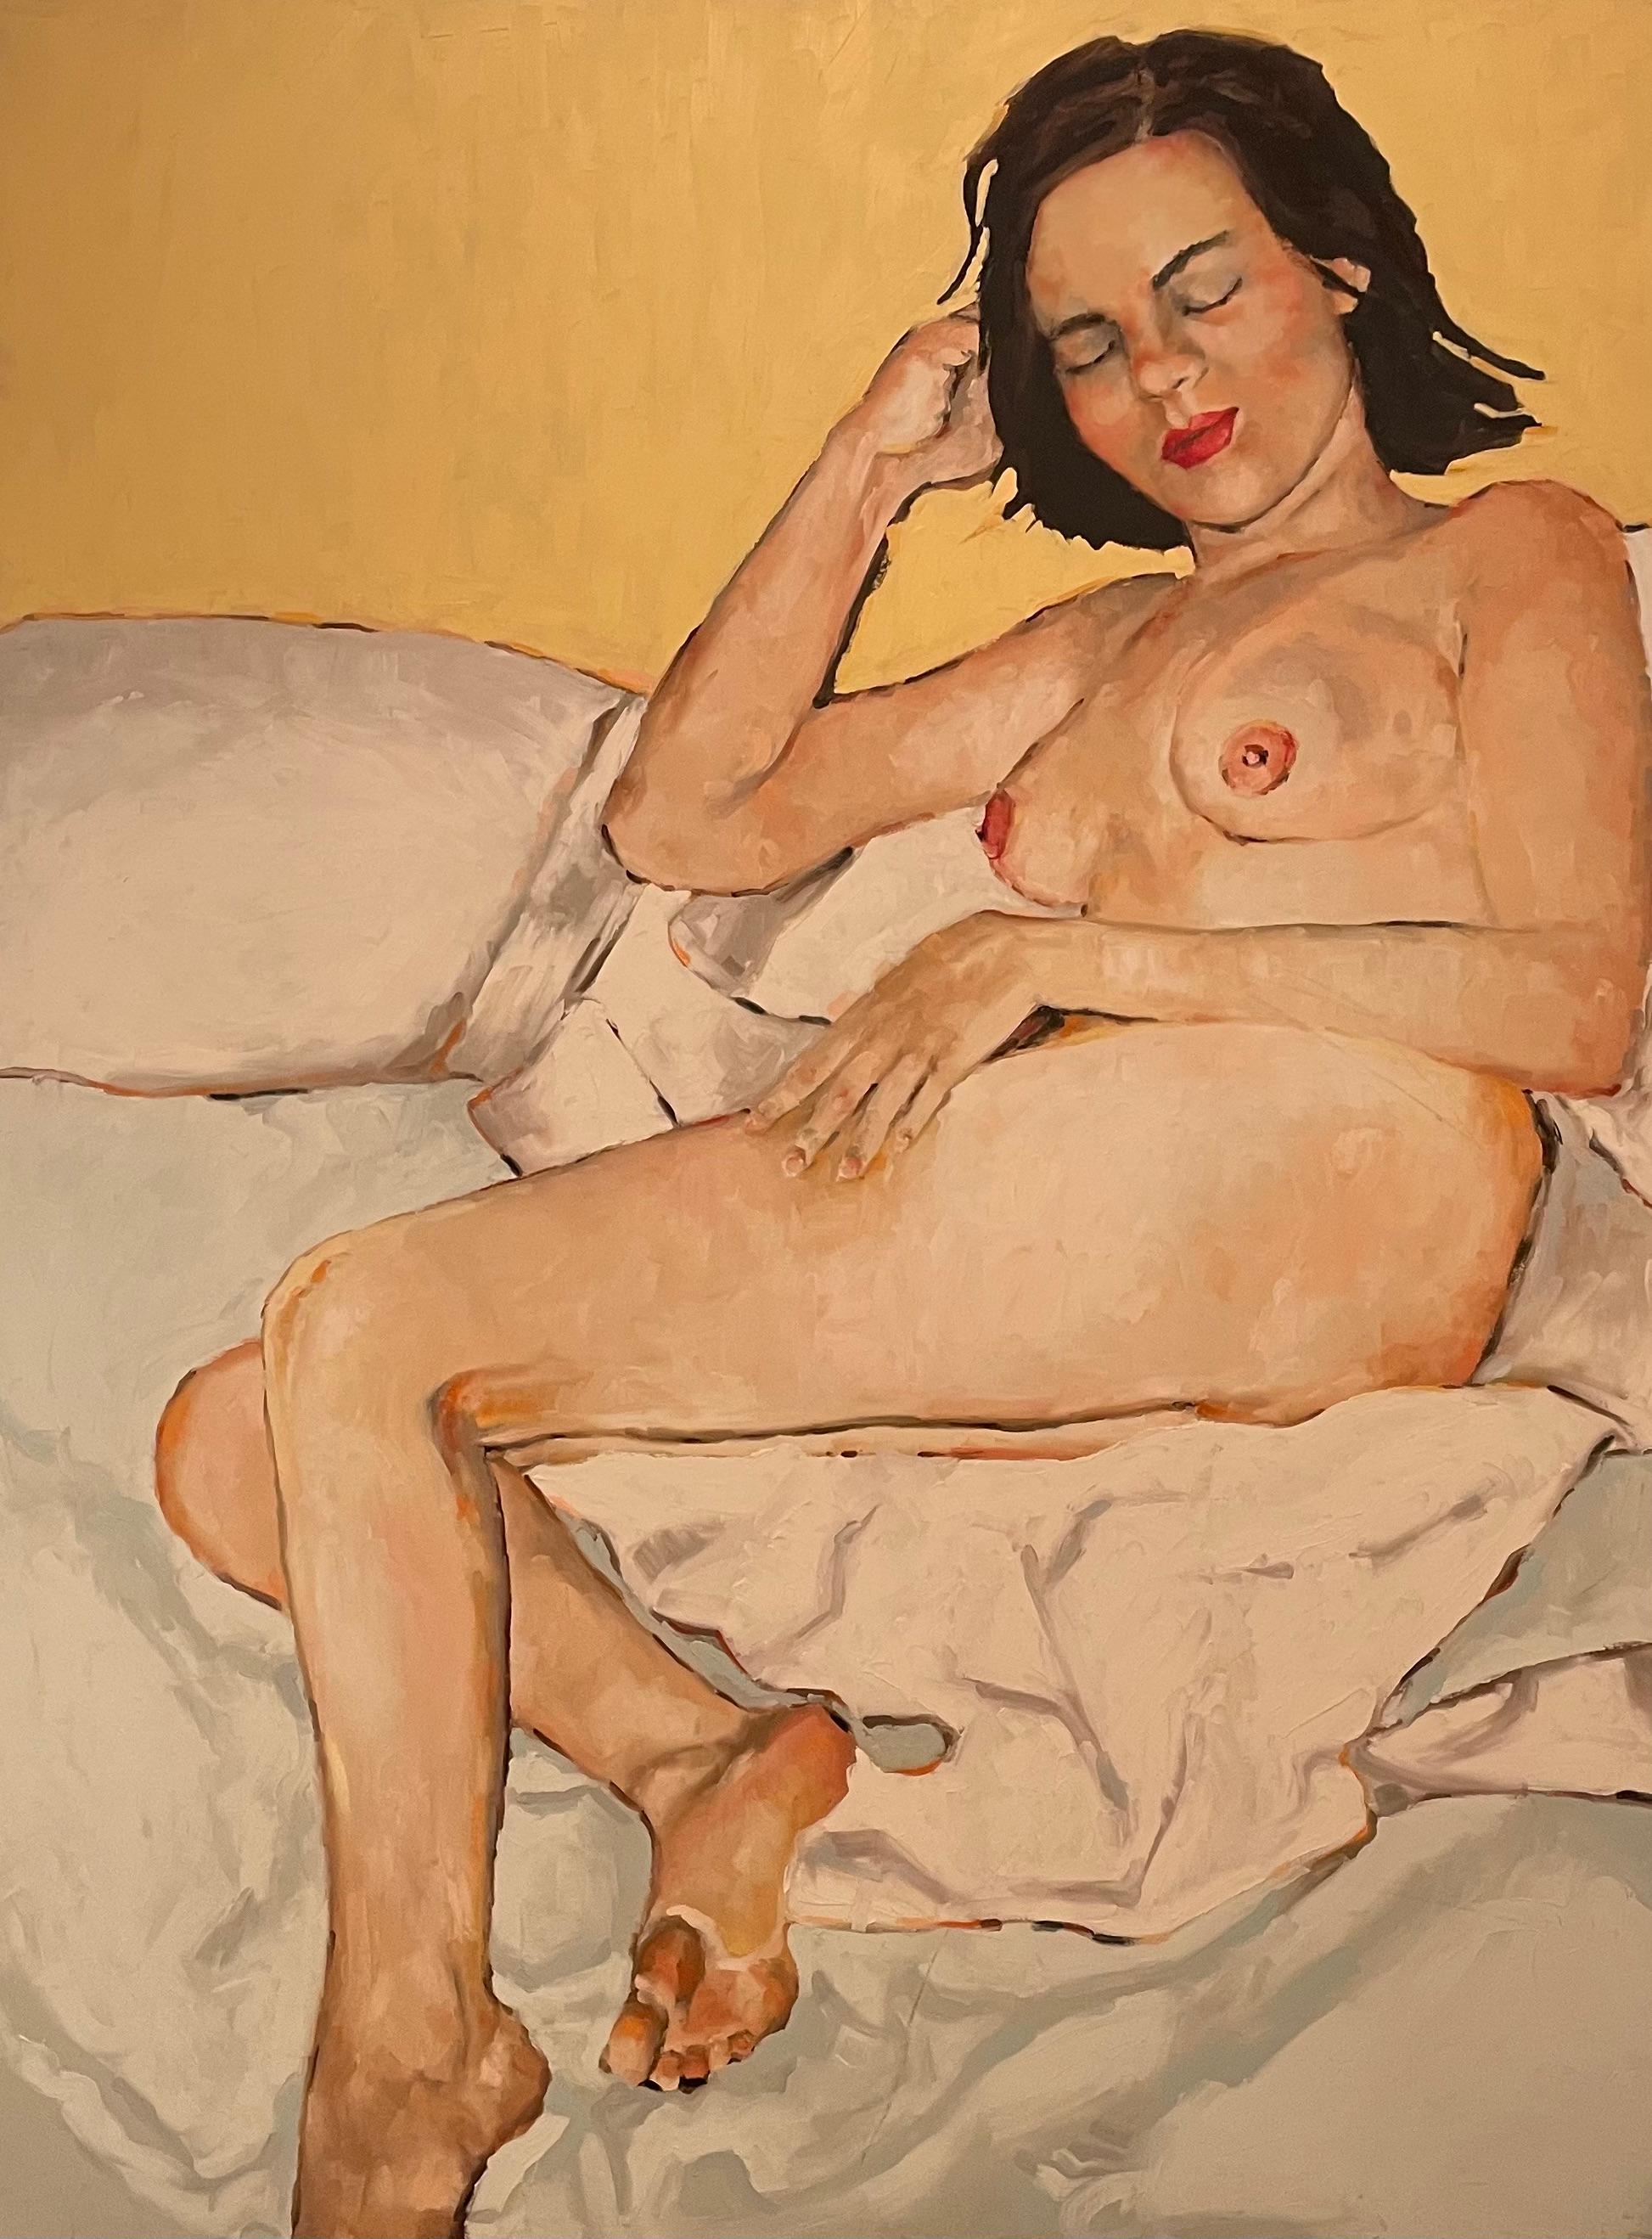 "Reclining Woman Nude" von Shana Wilson ist ein 48" x 36" großer zeitgenössischer figurativer Akt, der die menschliche Form auf subtile und anmutige Weise darstellt. Die Farbpalette besteht aus weichen, erdigen Tönen wie warmen Brauntönen und zarten